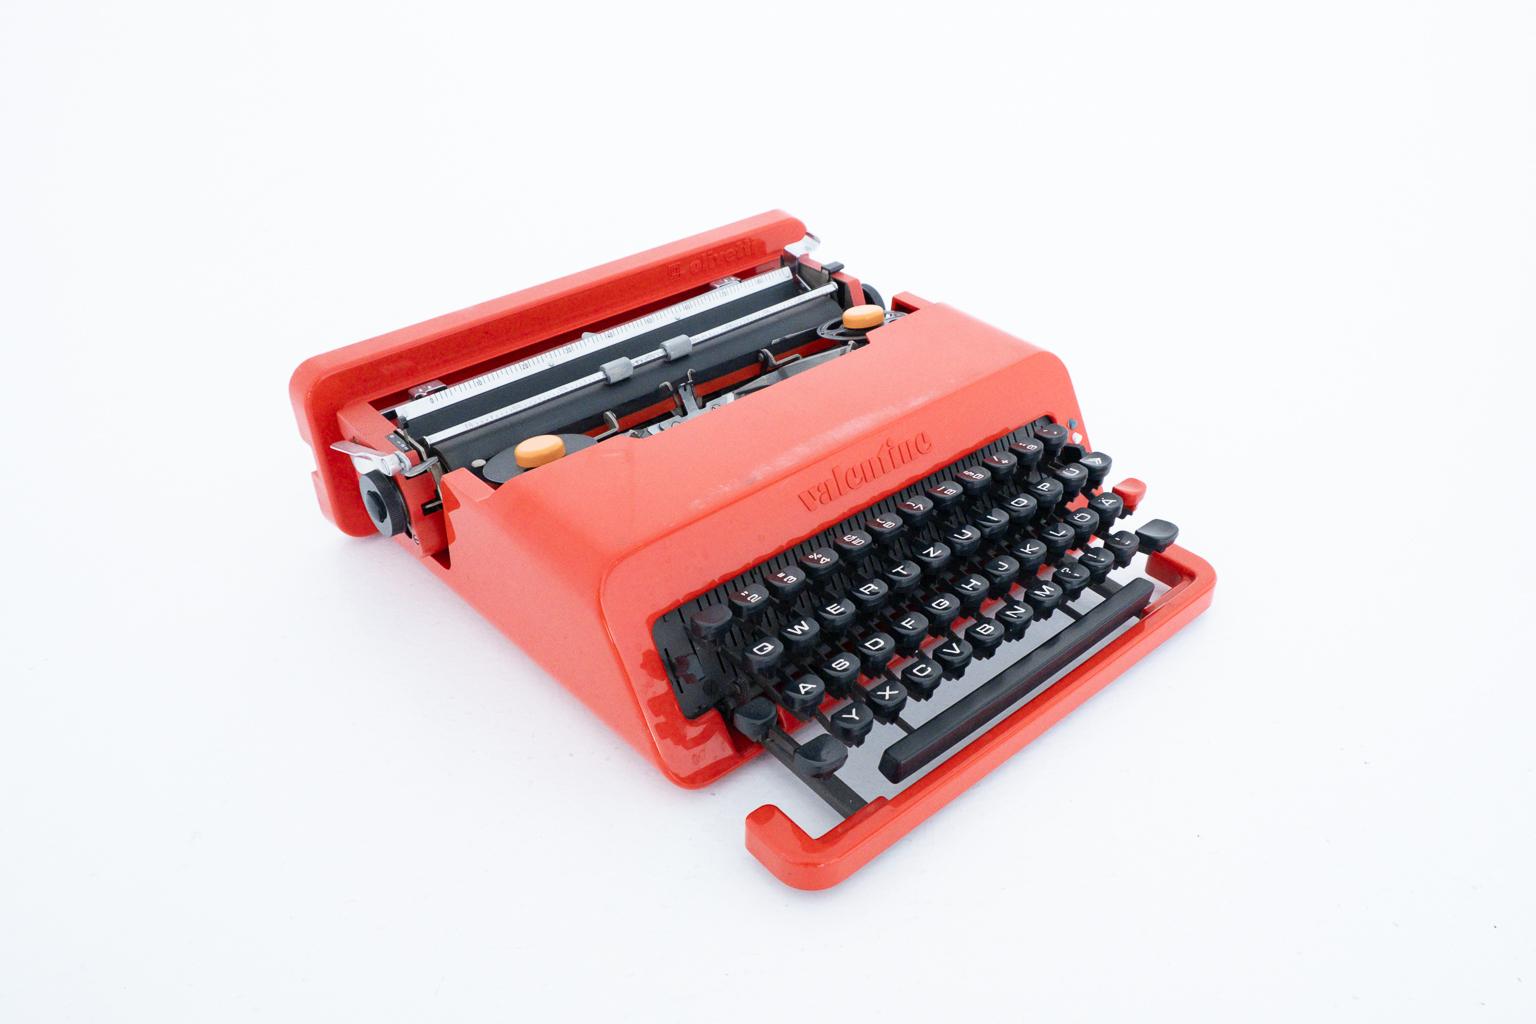 La Valentine d'Olivetti est une machine à écrire portable, mécanique et de voyage qui a été fabriquée par la société italienne Olivetti de 1969 à 2000. Il est connu pour son design non conventionnel, créé par le designer italien Ettore Sottsass en